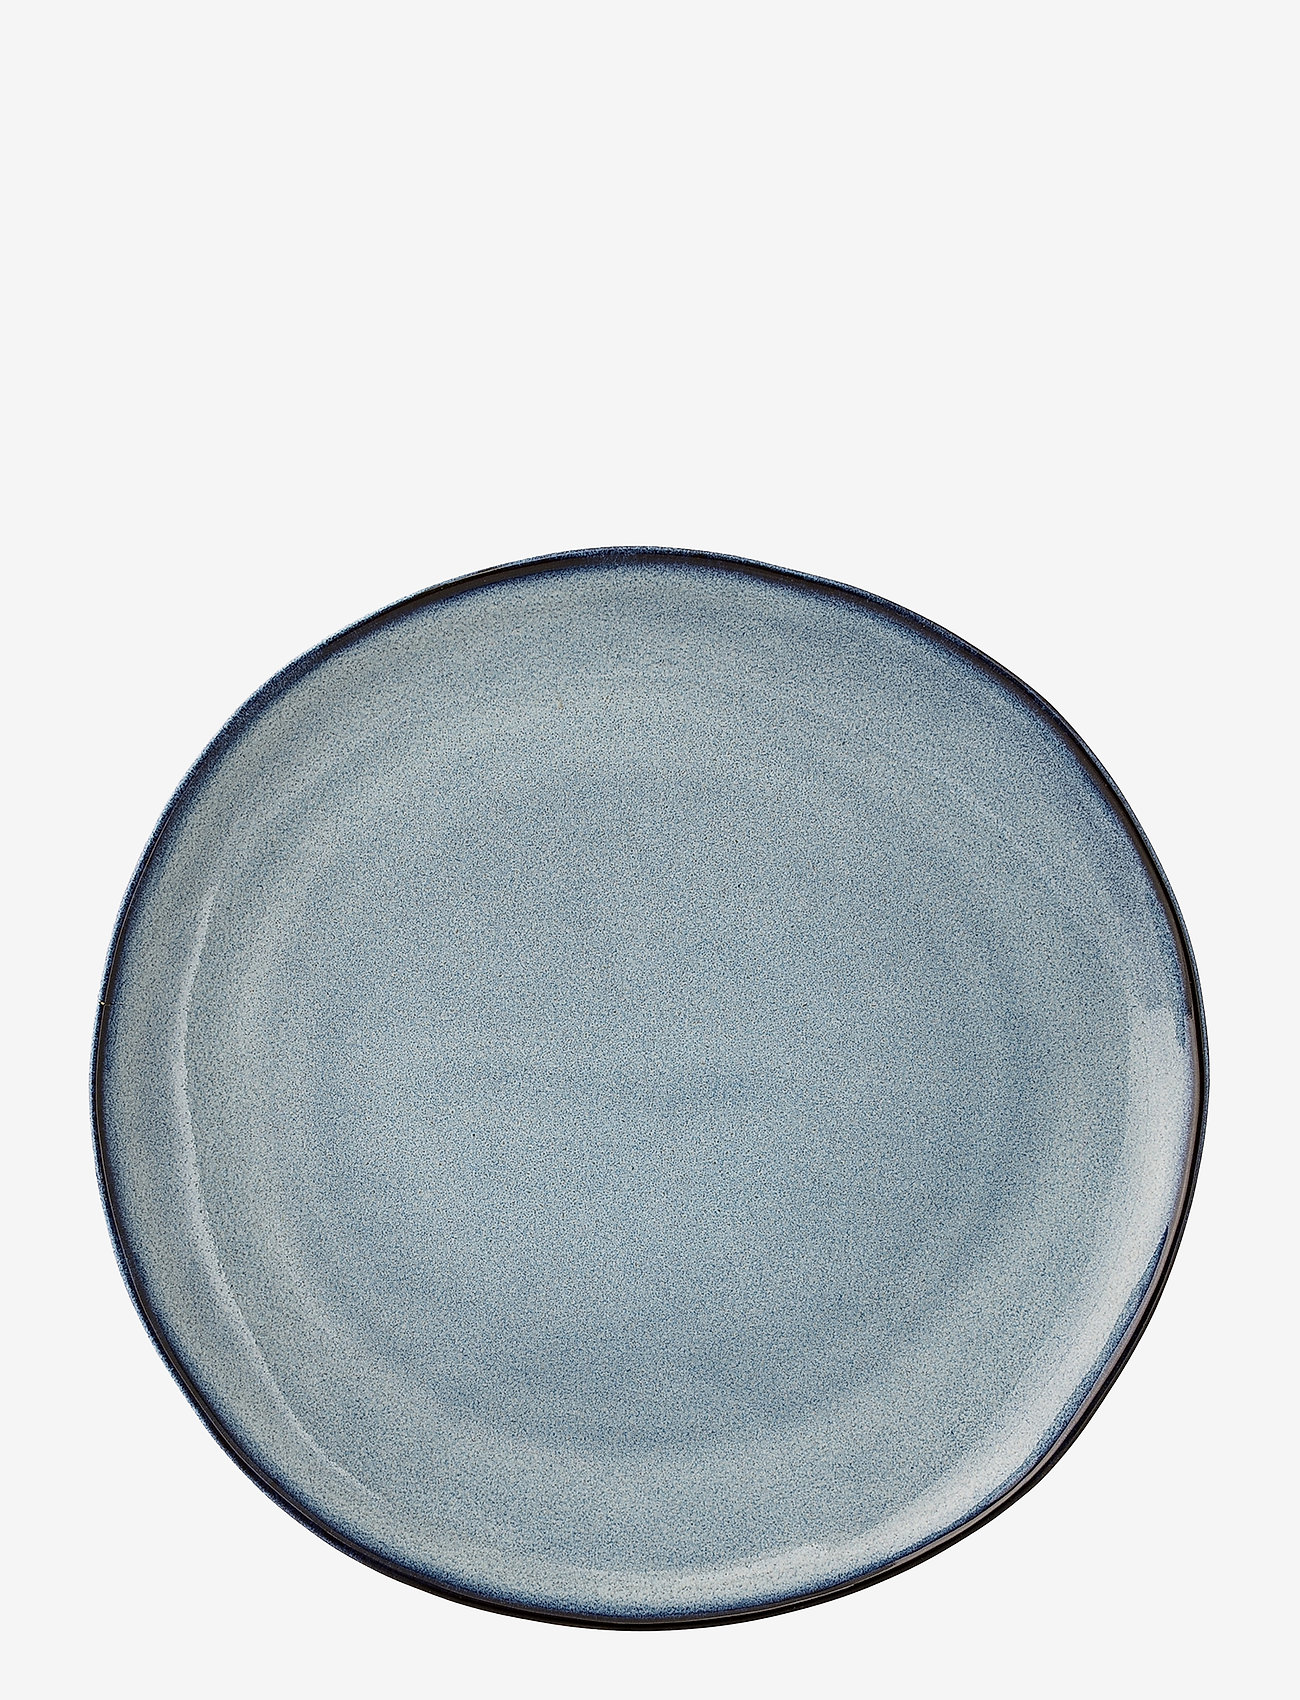 Bloomingville - Sandrine Plate - madalaimad hinnad - blue - 0